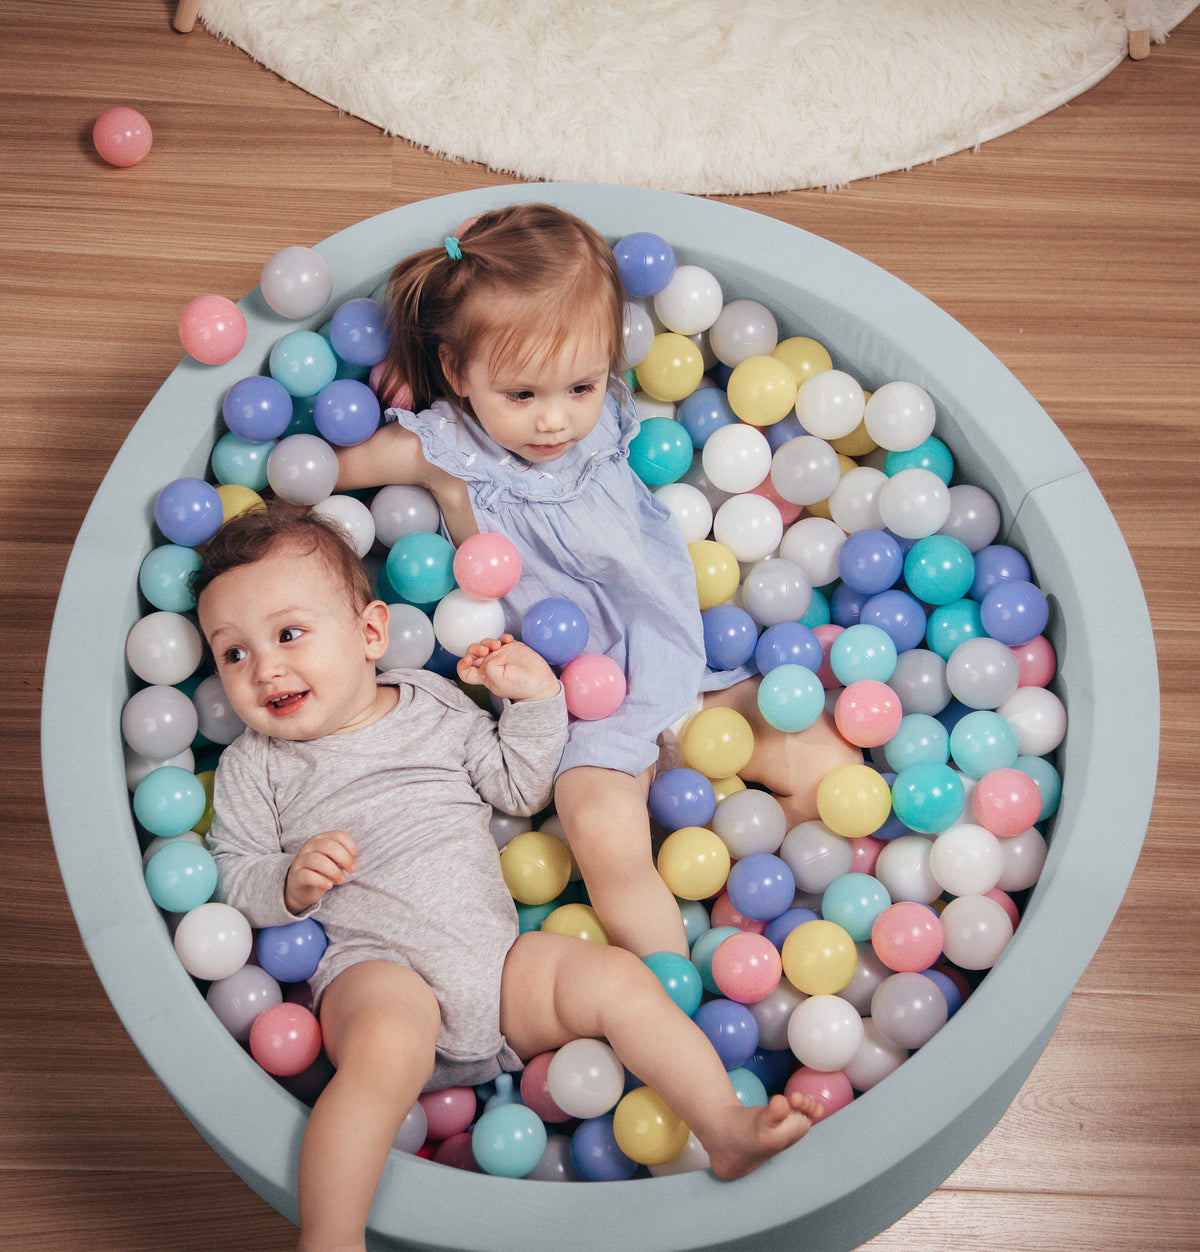 Foam Ball Pit for Toddler Children -(Balls NOT Included) Light Blue